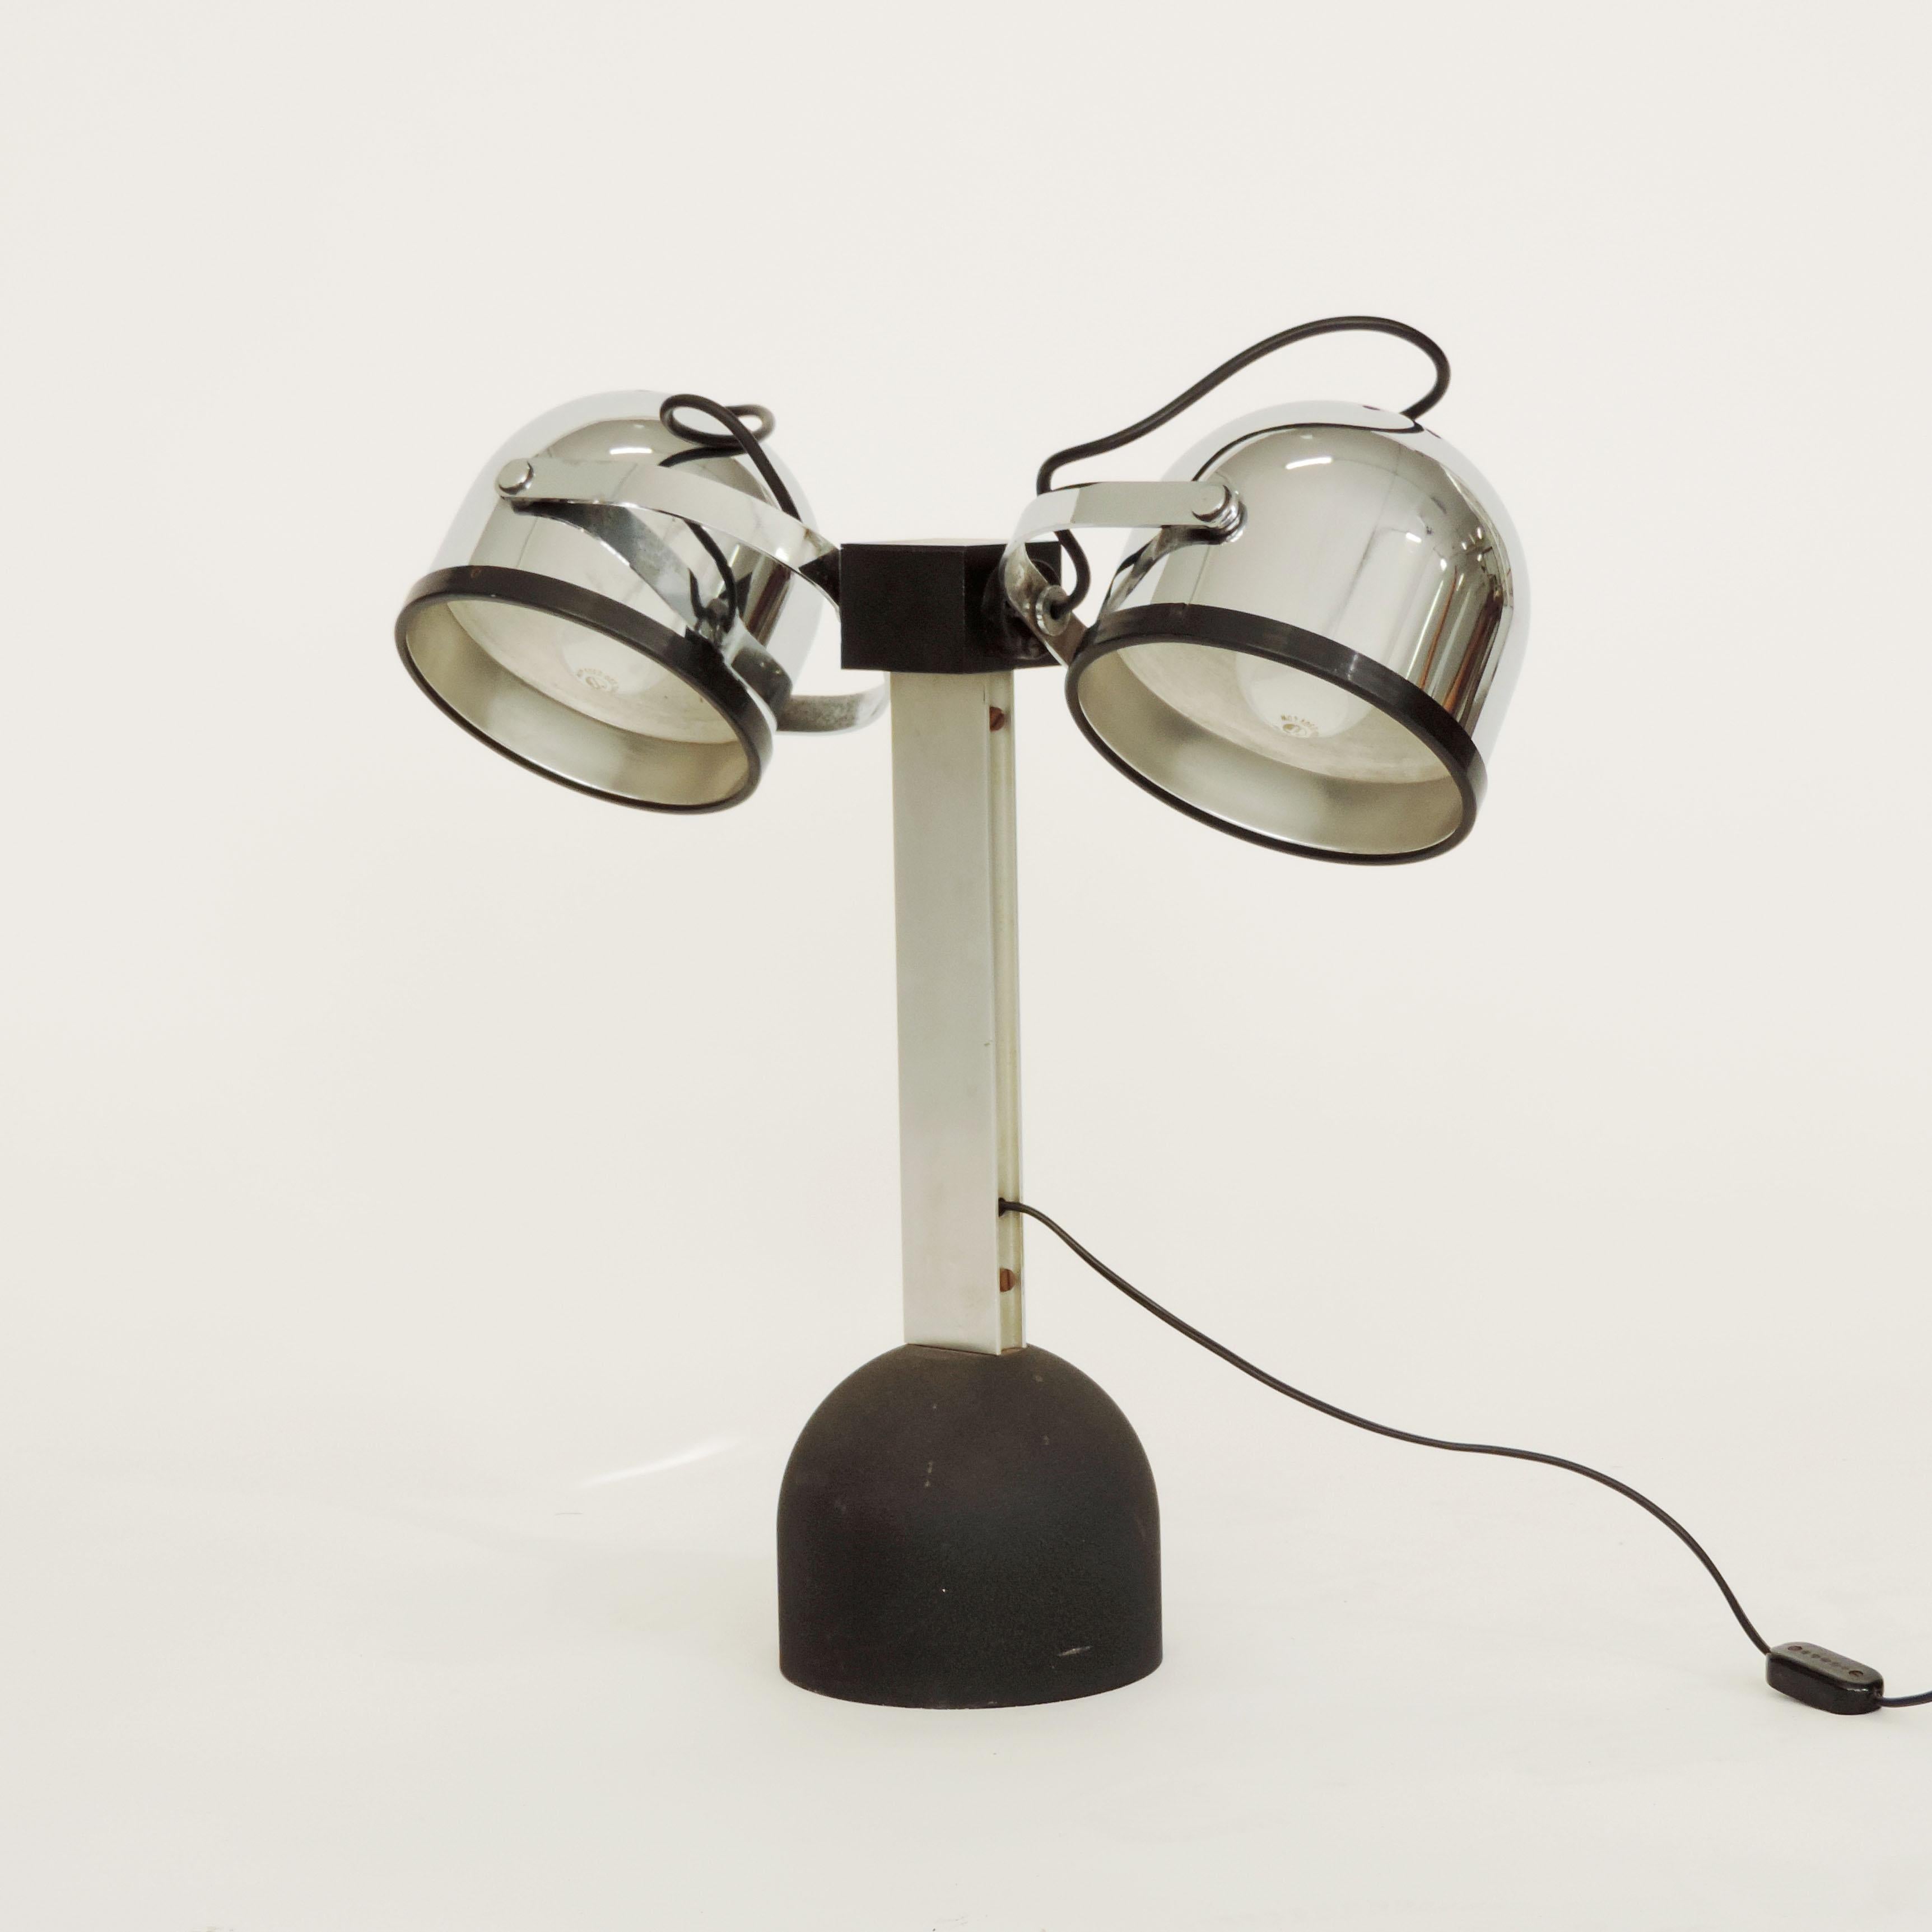 Pair of Gae Aulenti & Livio Castiglioni Trepiù Table Lamps for Stilnovo, 1972 For Sale 2